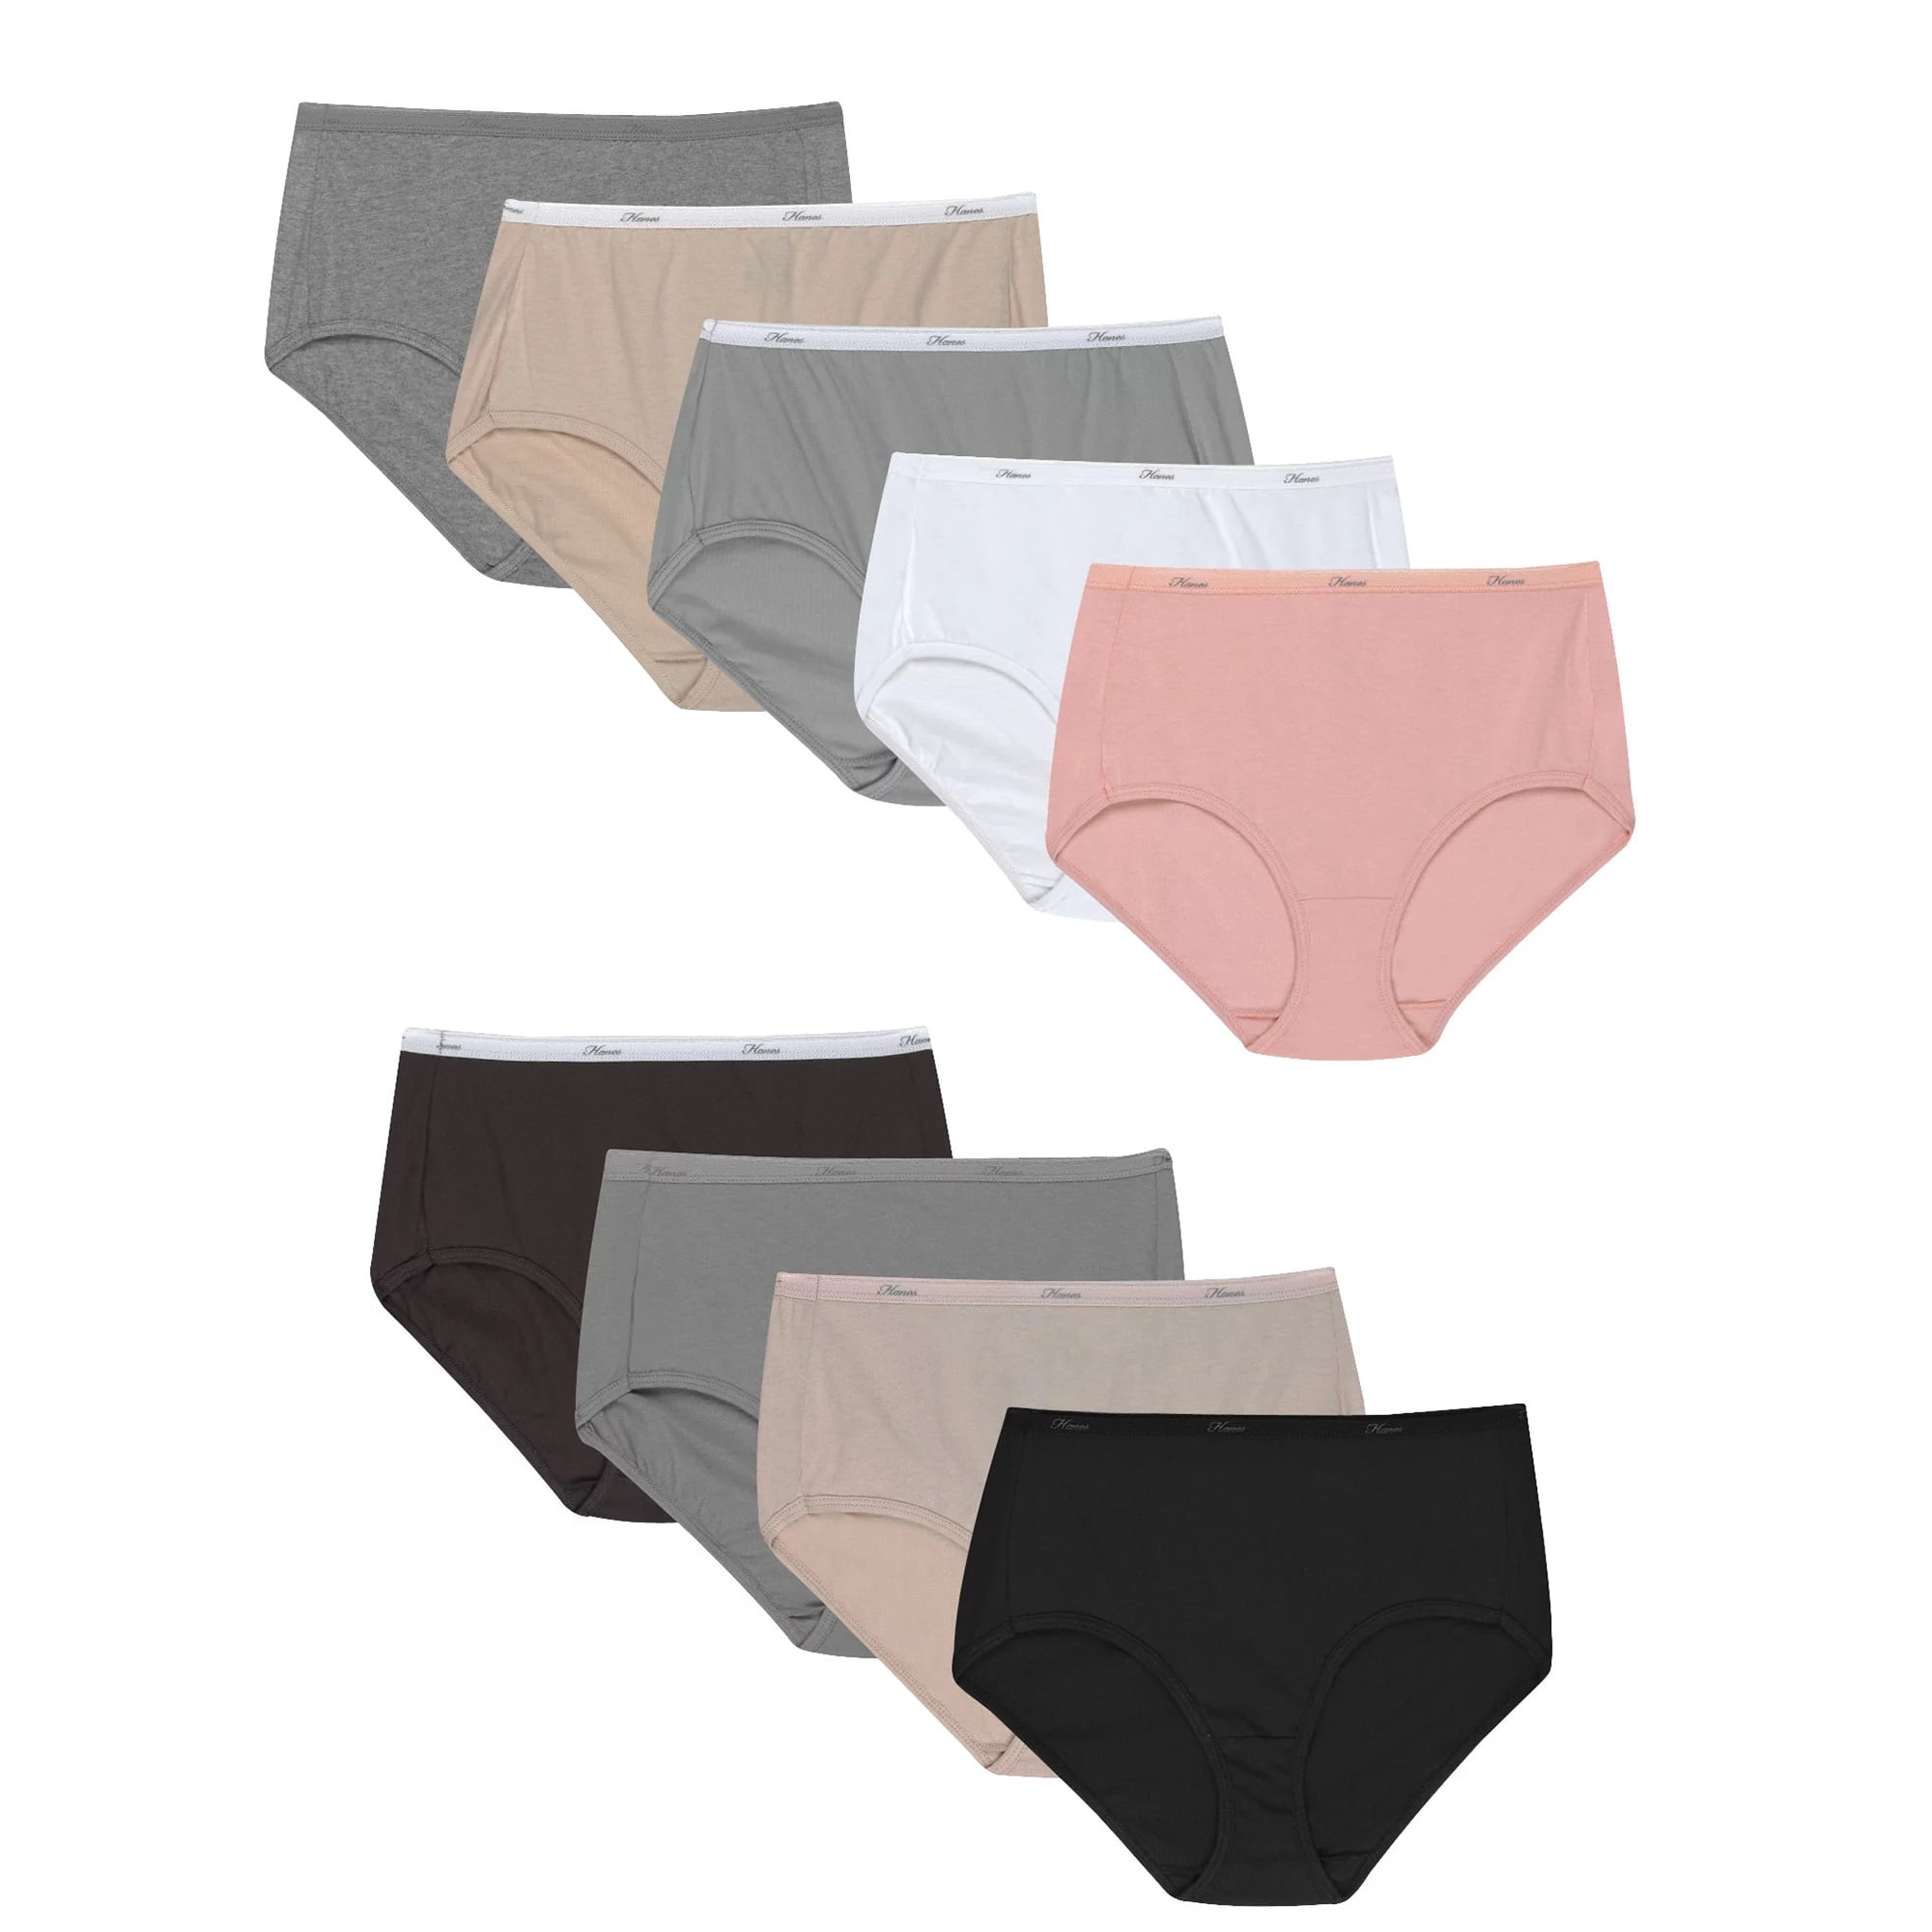 Hanes Brief Panties 12-Pack Women's Underwear Cool Comfort Sporty 100%  cotton